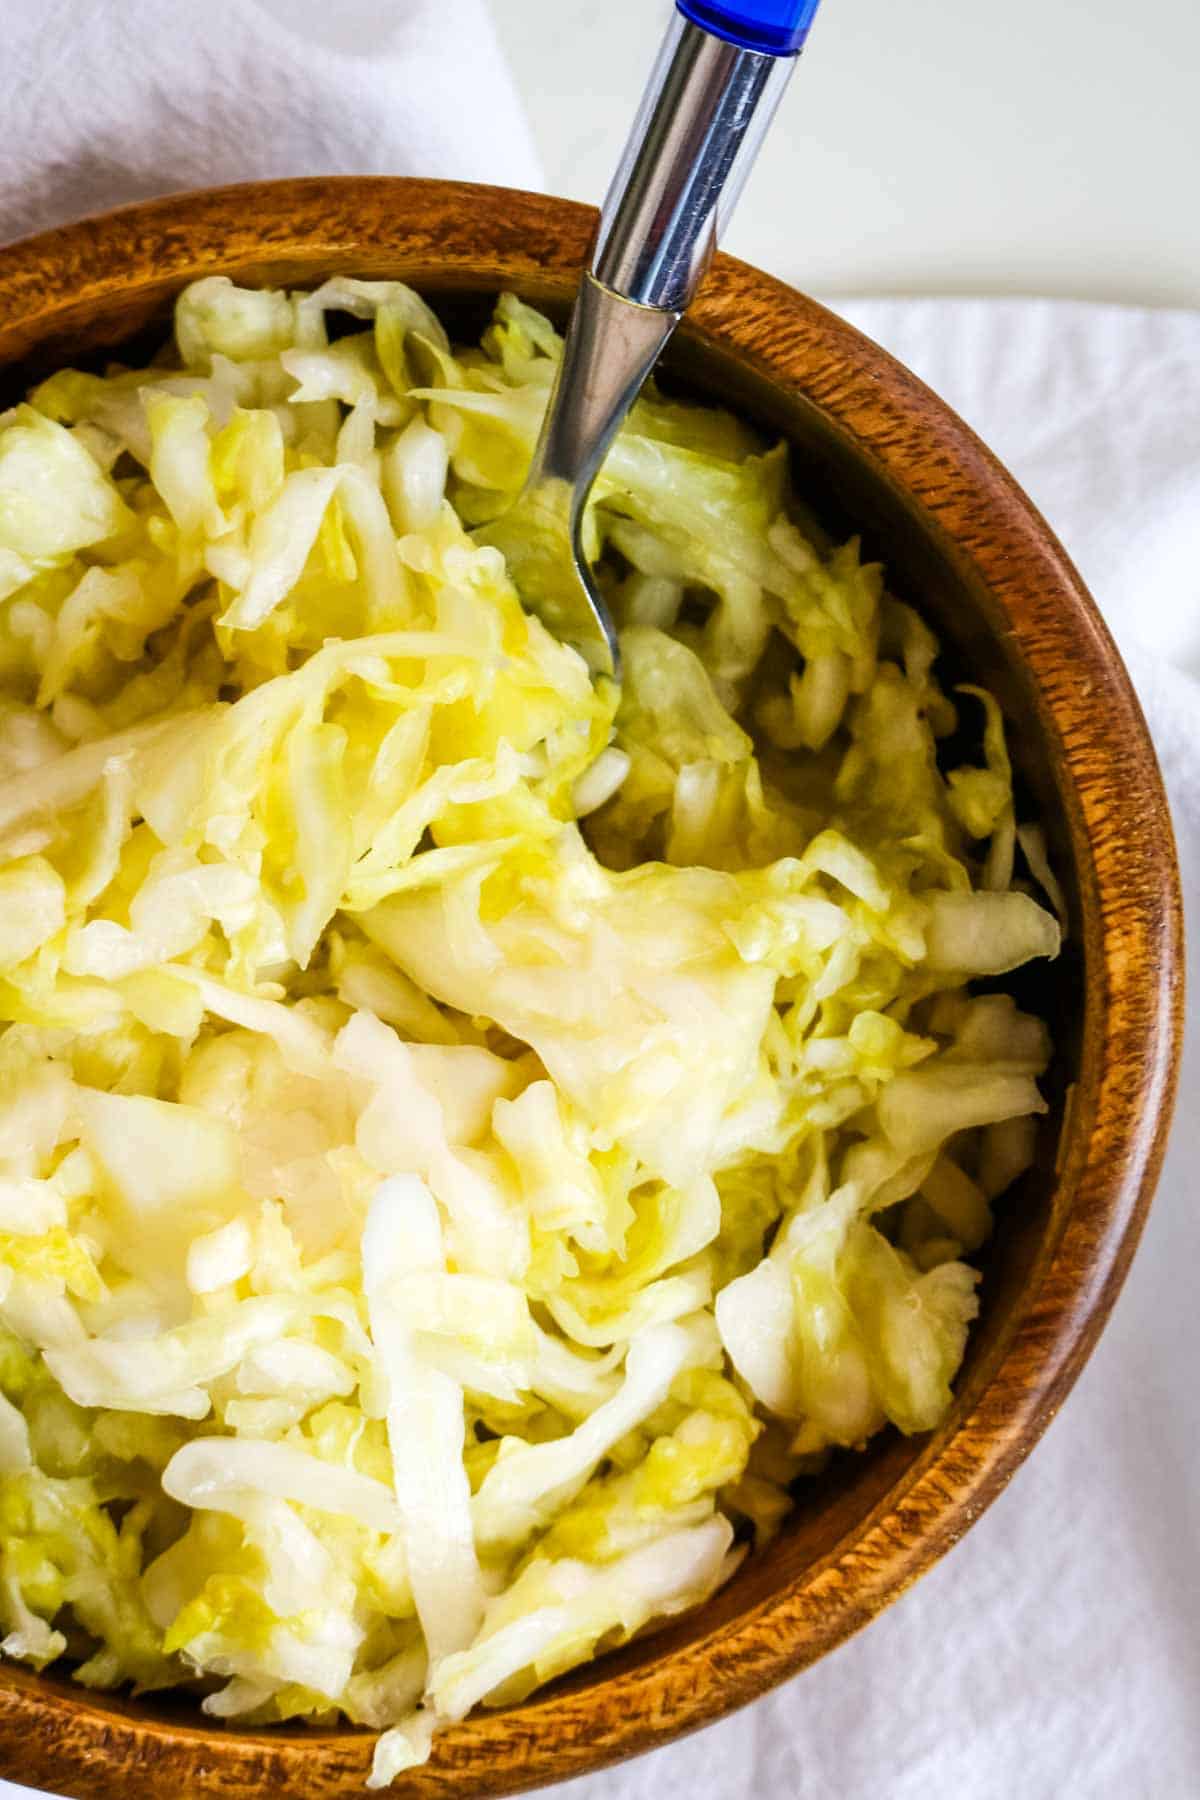 sauerkraut in wooden bowl with fork.